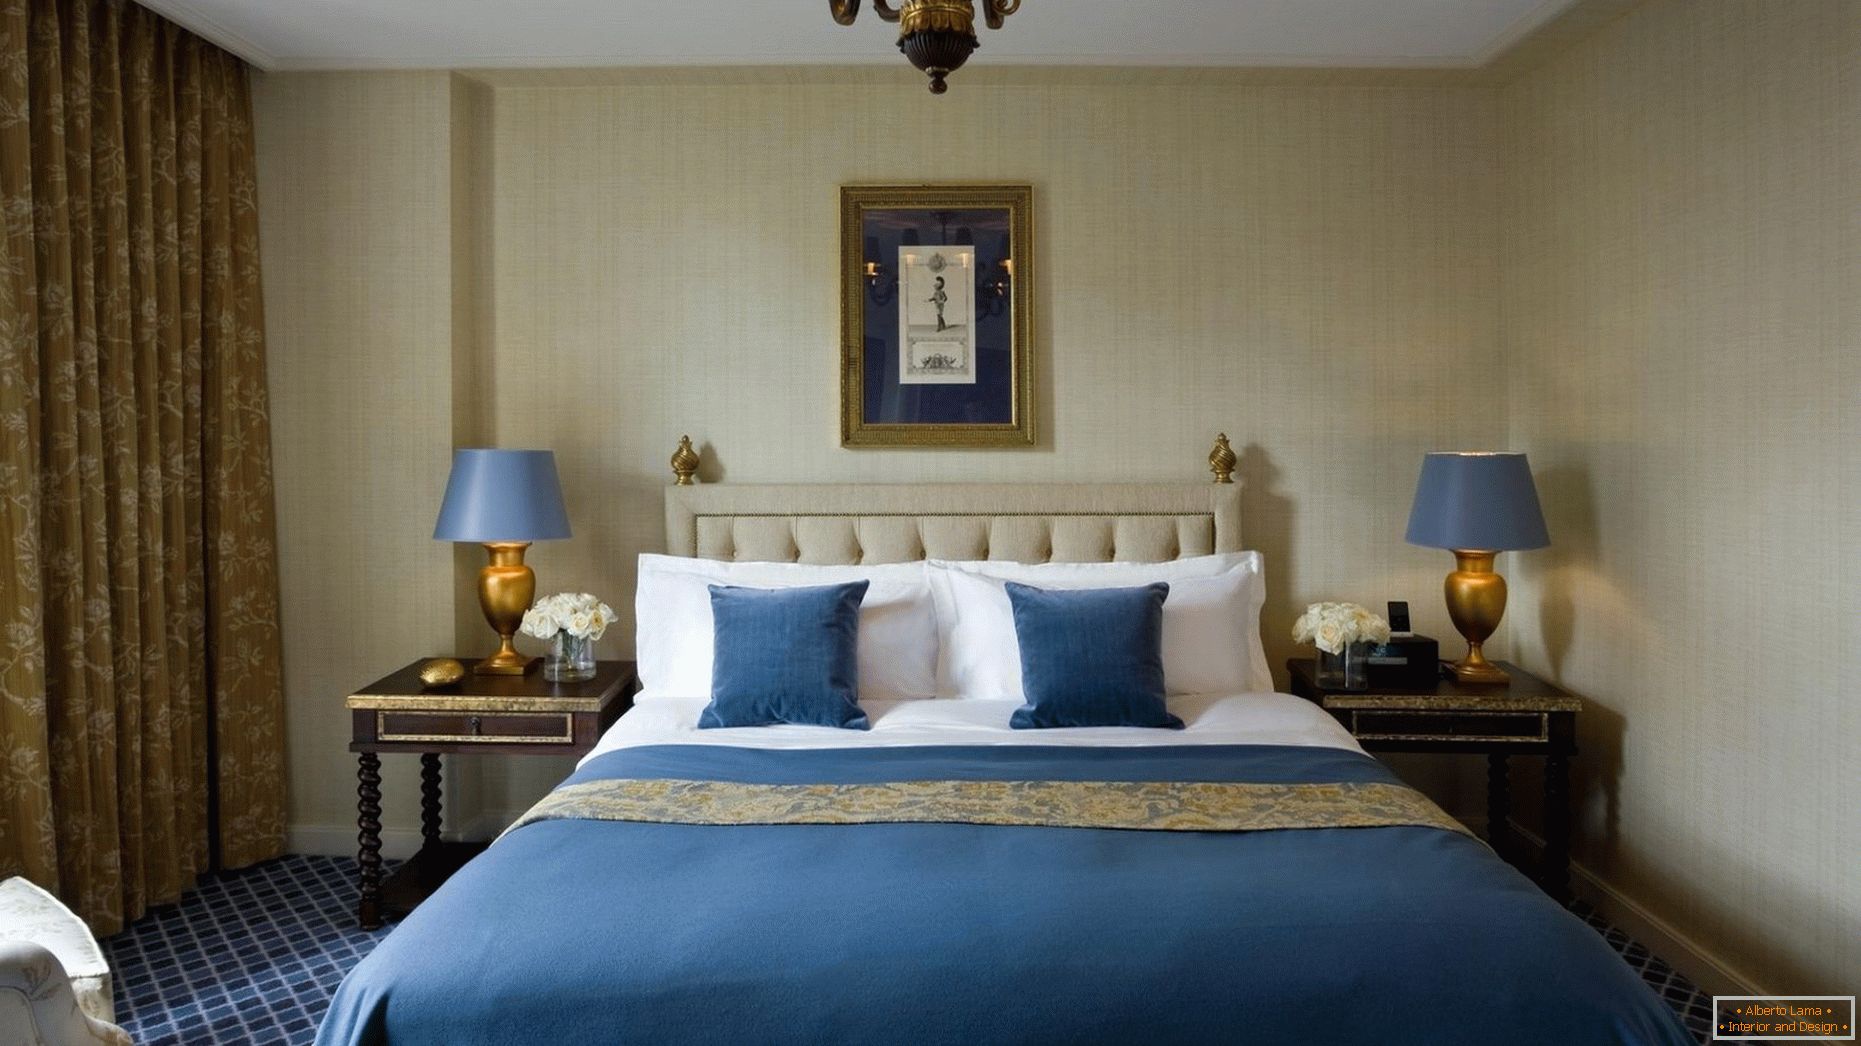 Tonos azules y dorados en el interior del dormitorio